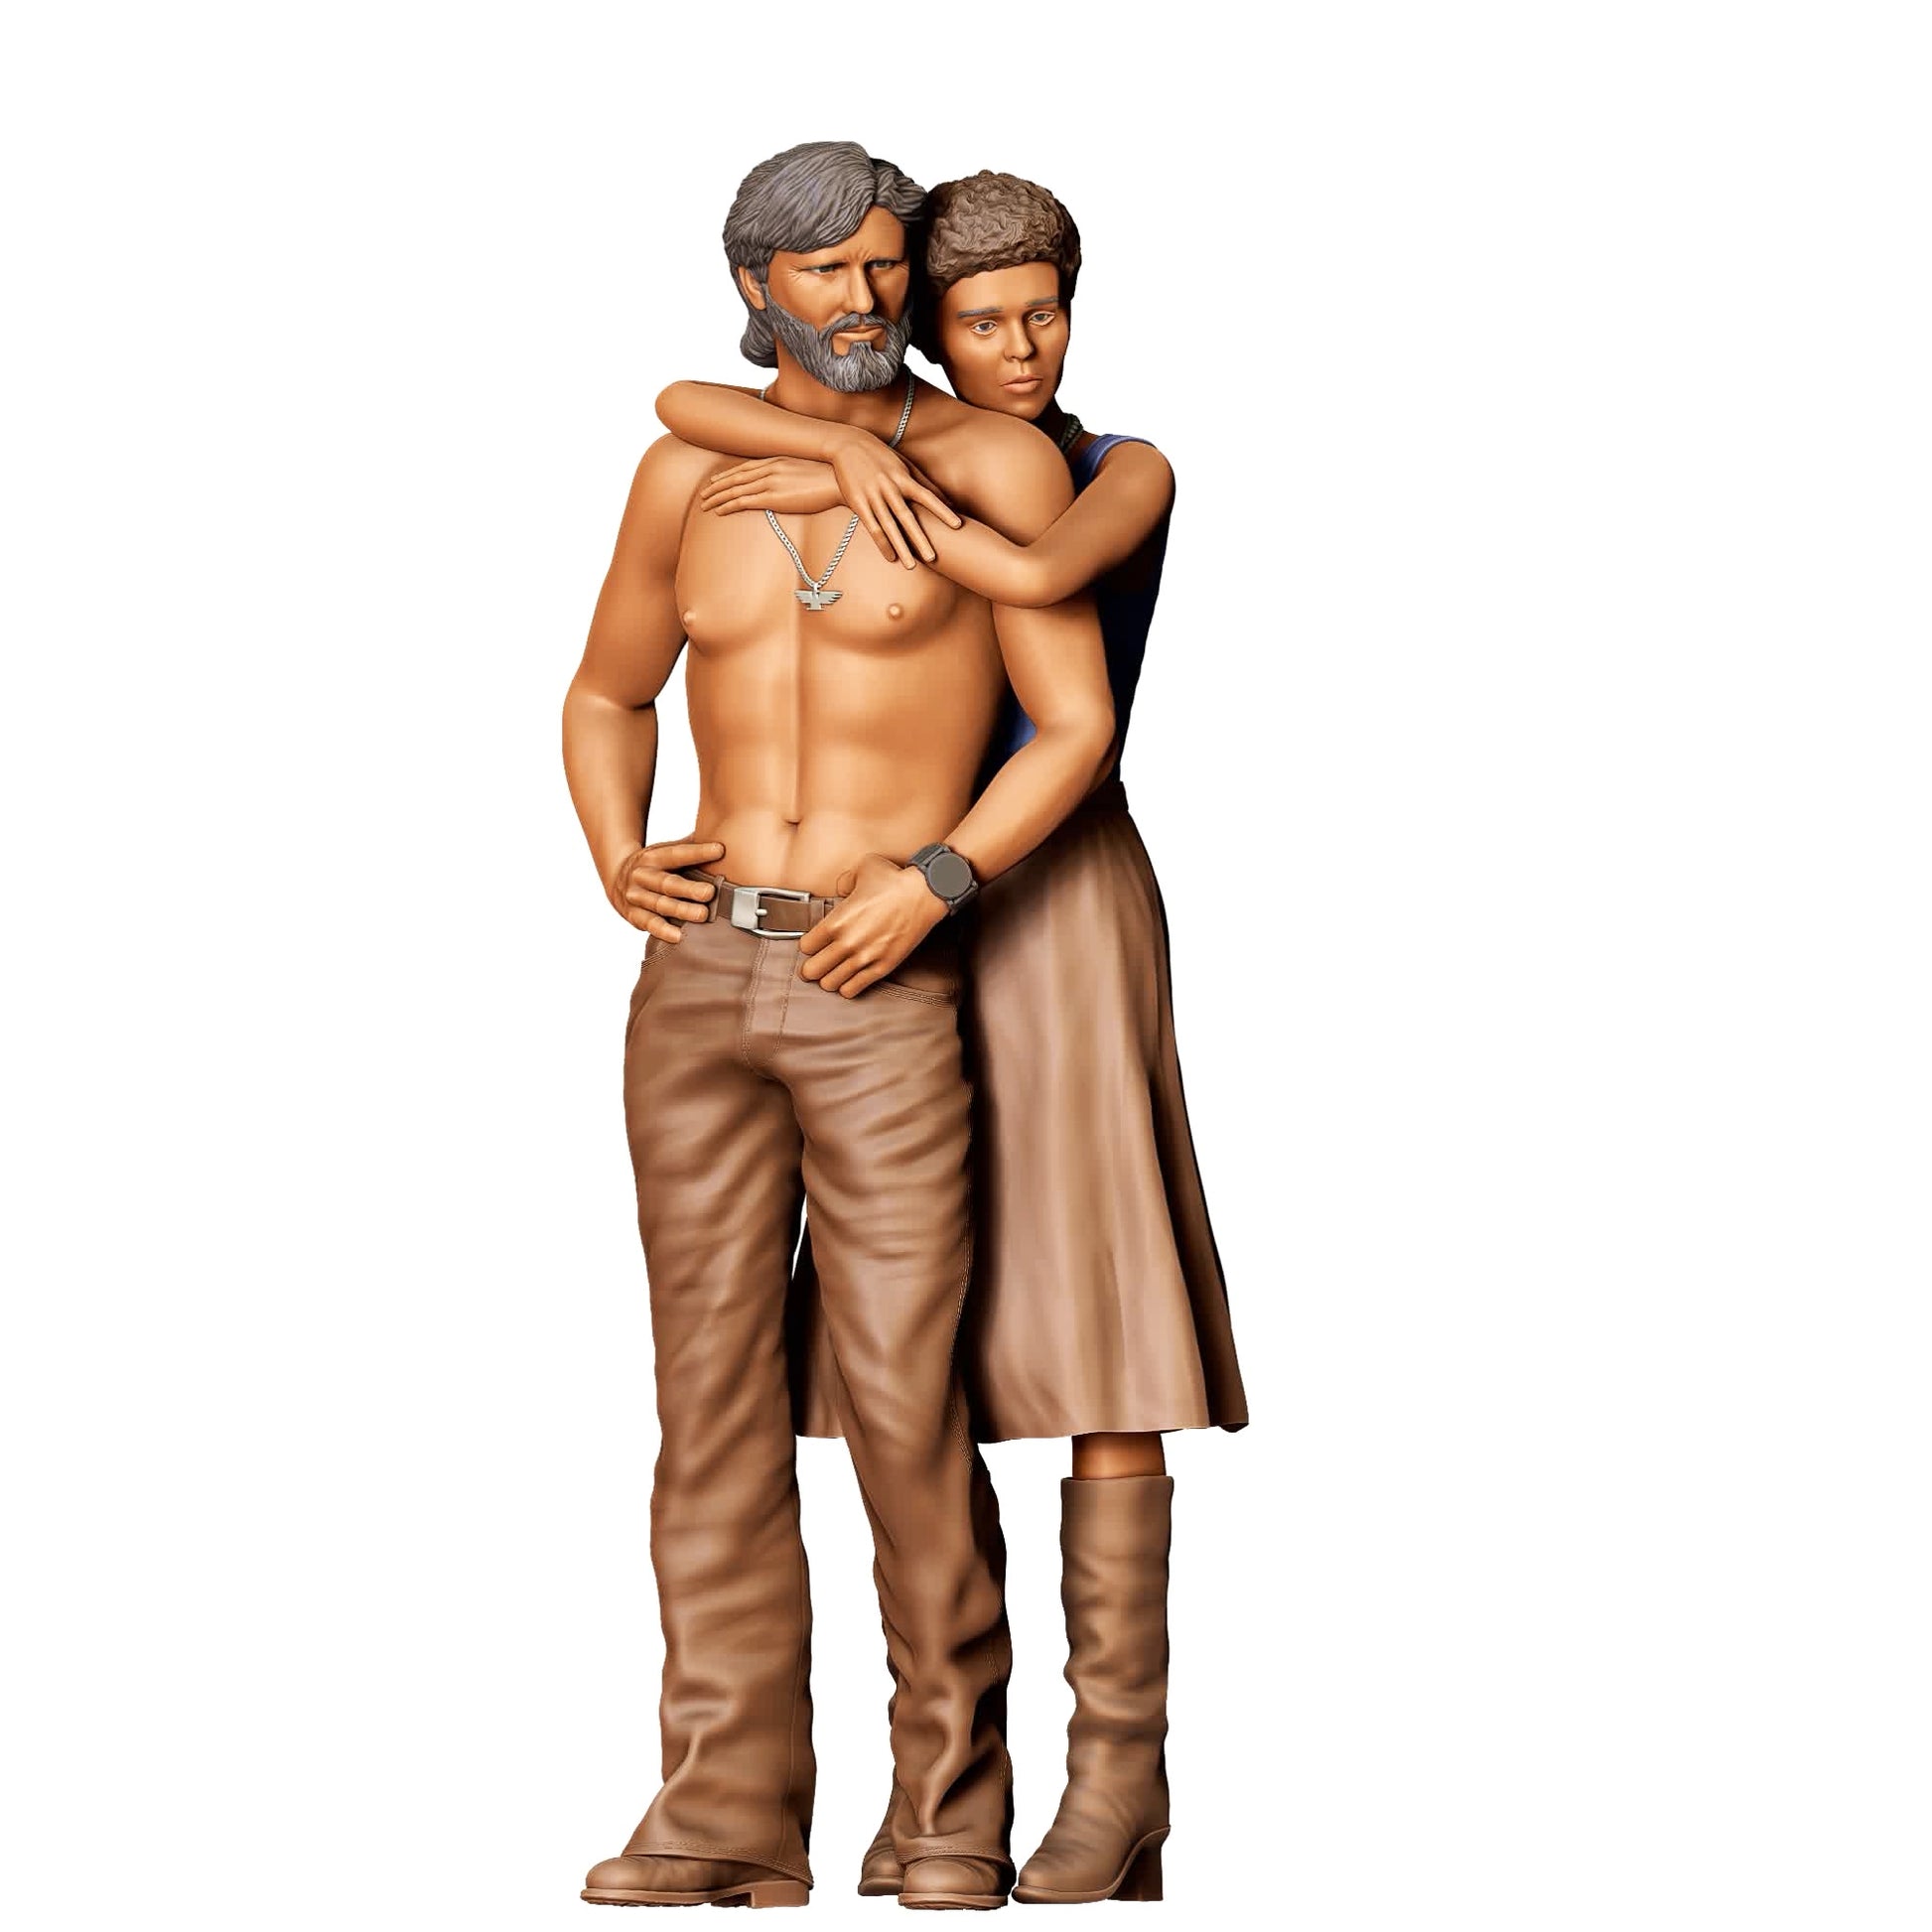 Produktfoto  0: Liebespaar: Mann mit nacktem Oberkörper von Frau umarmt